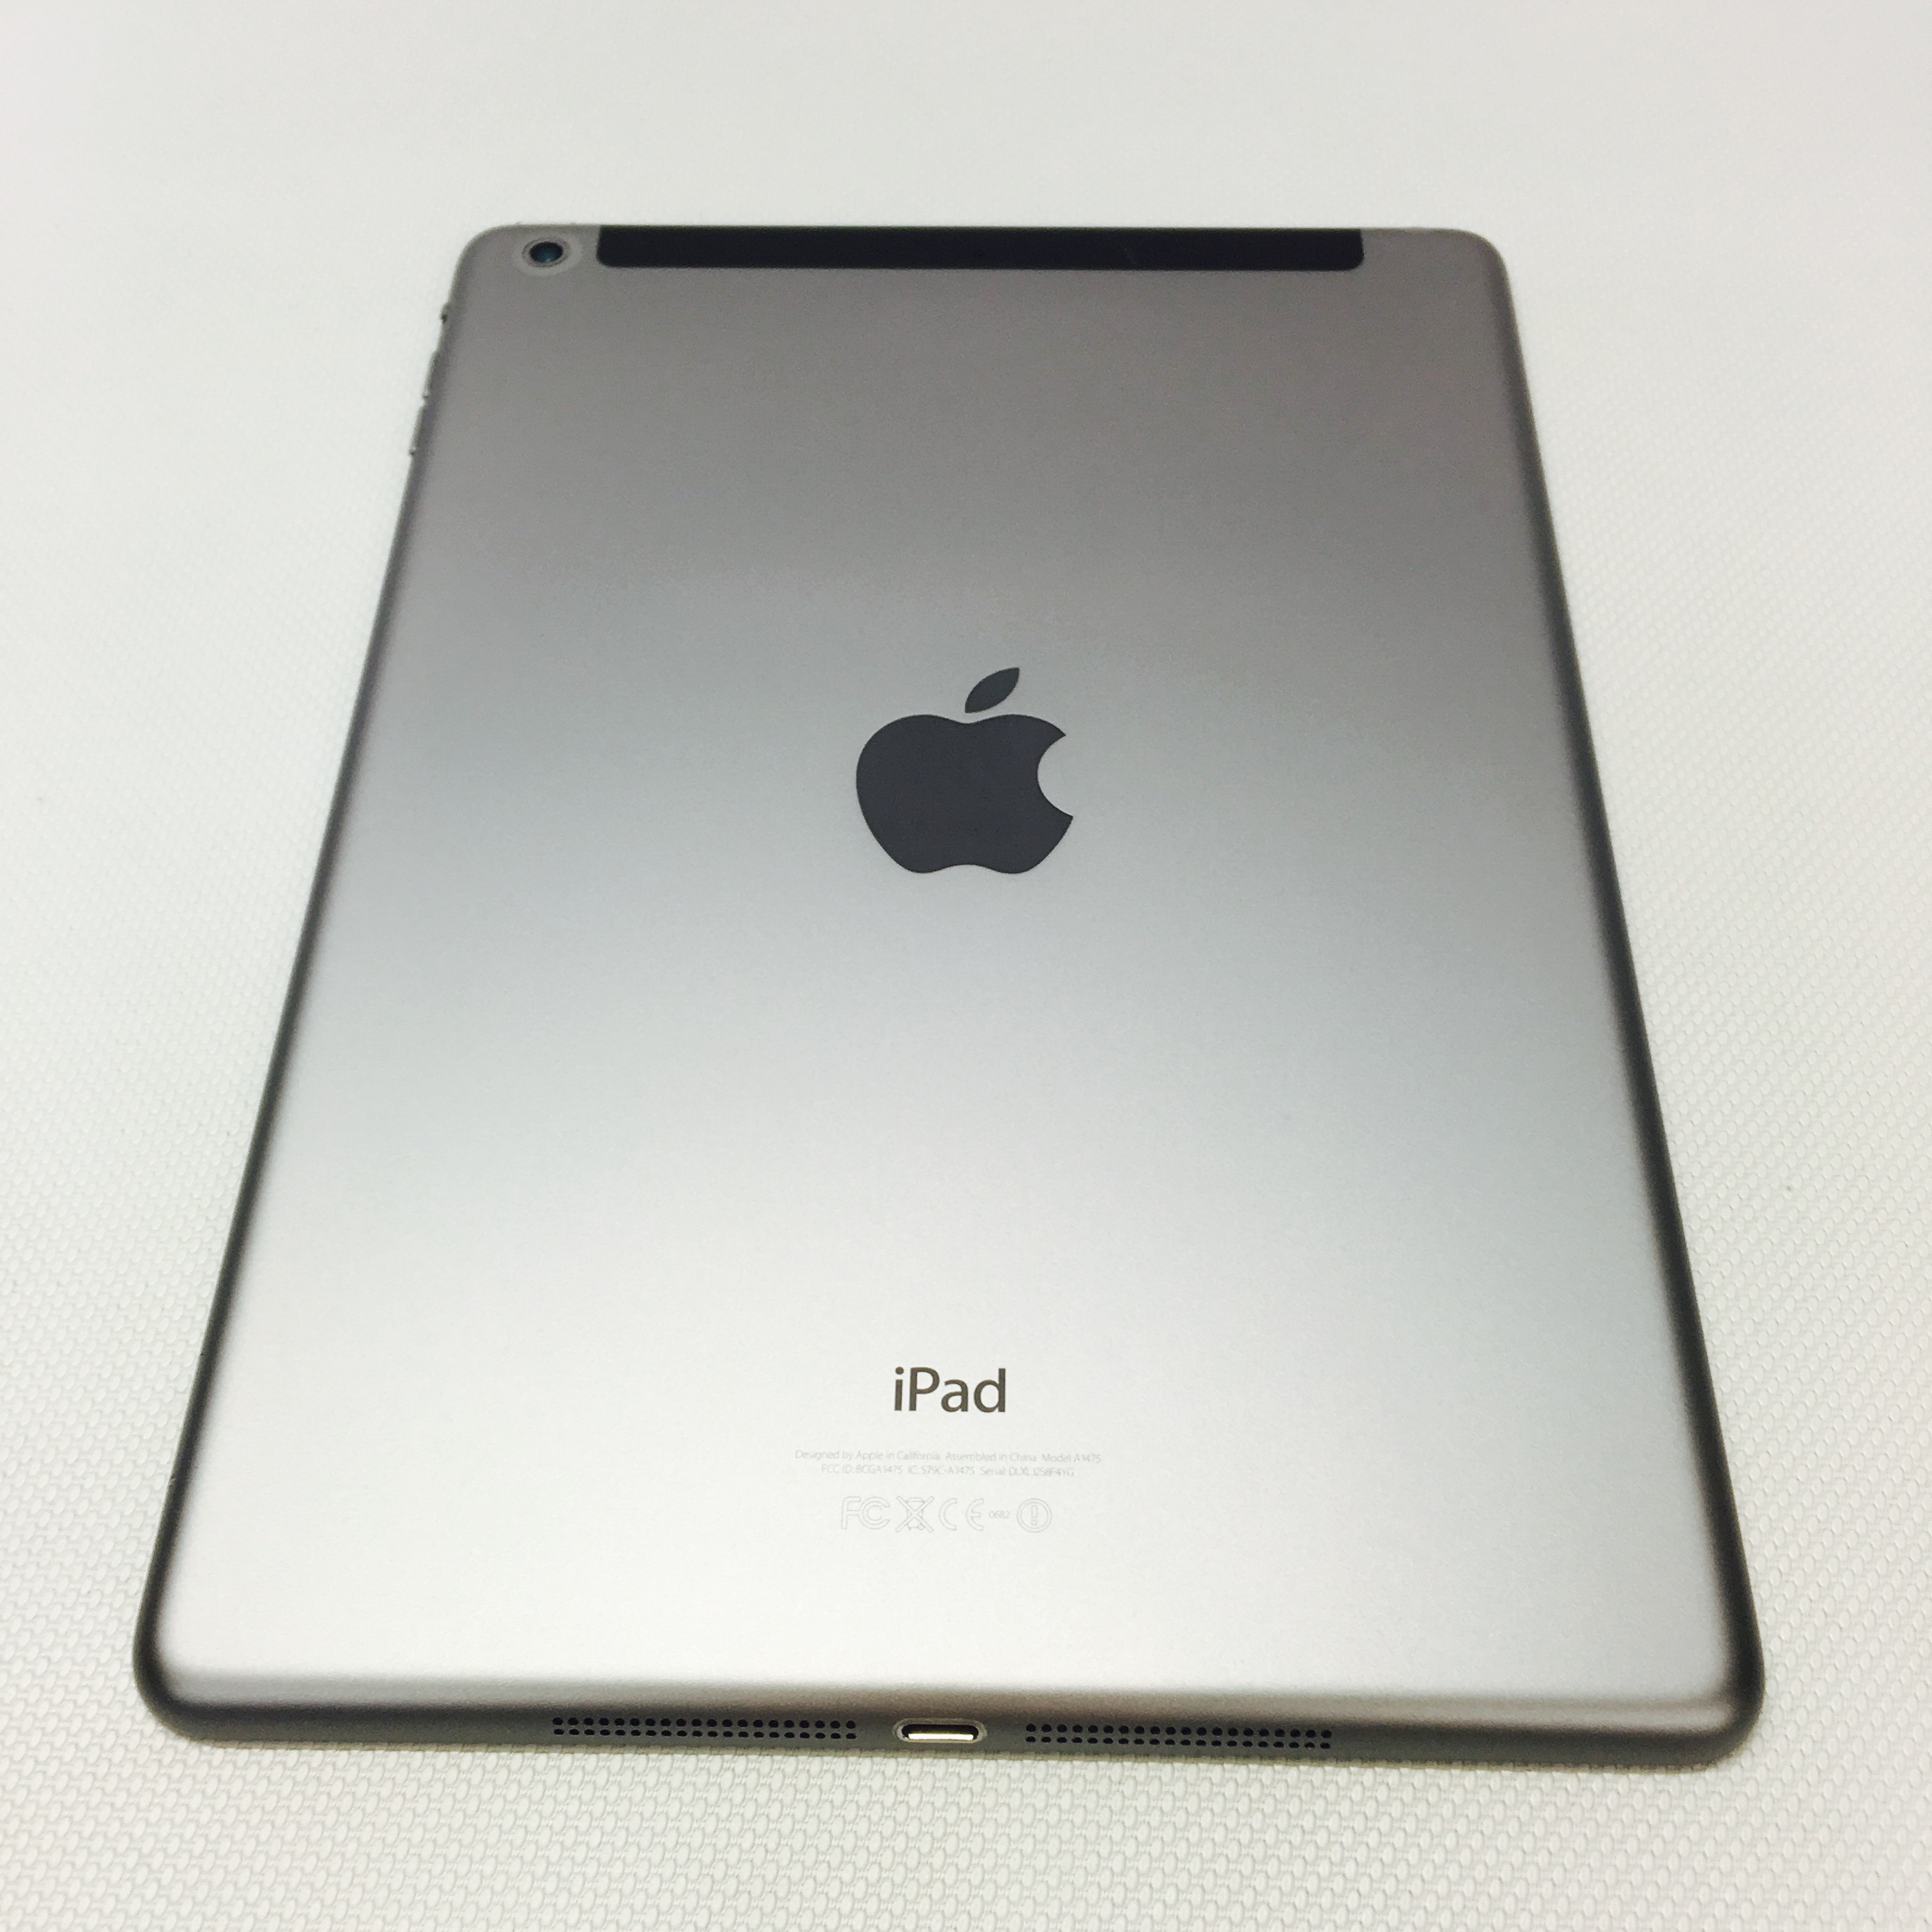 Fully Refurbished iPad Air 64GB Space Grey Wi-Fi, Cellular 64GB / GRAY